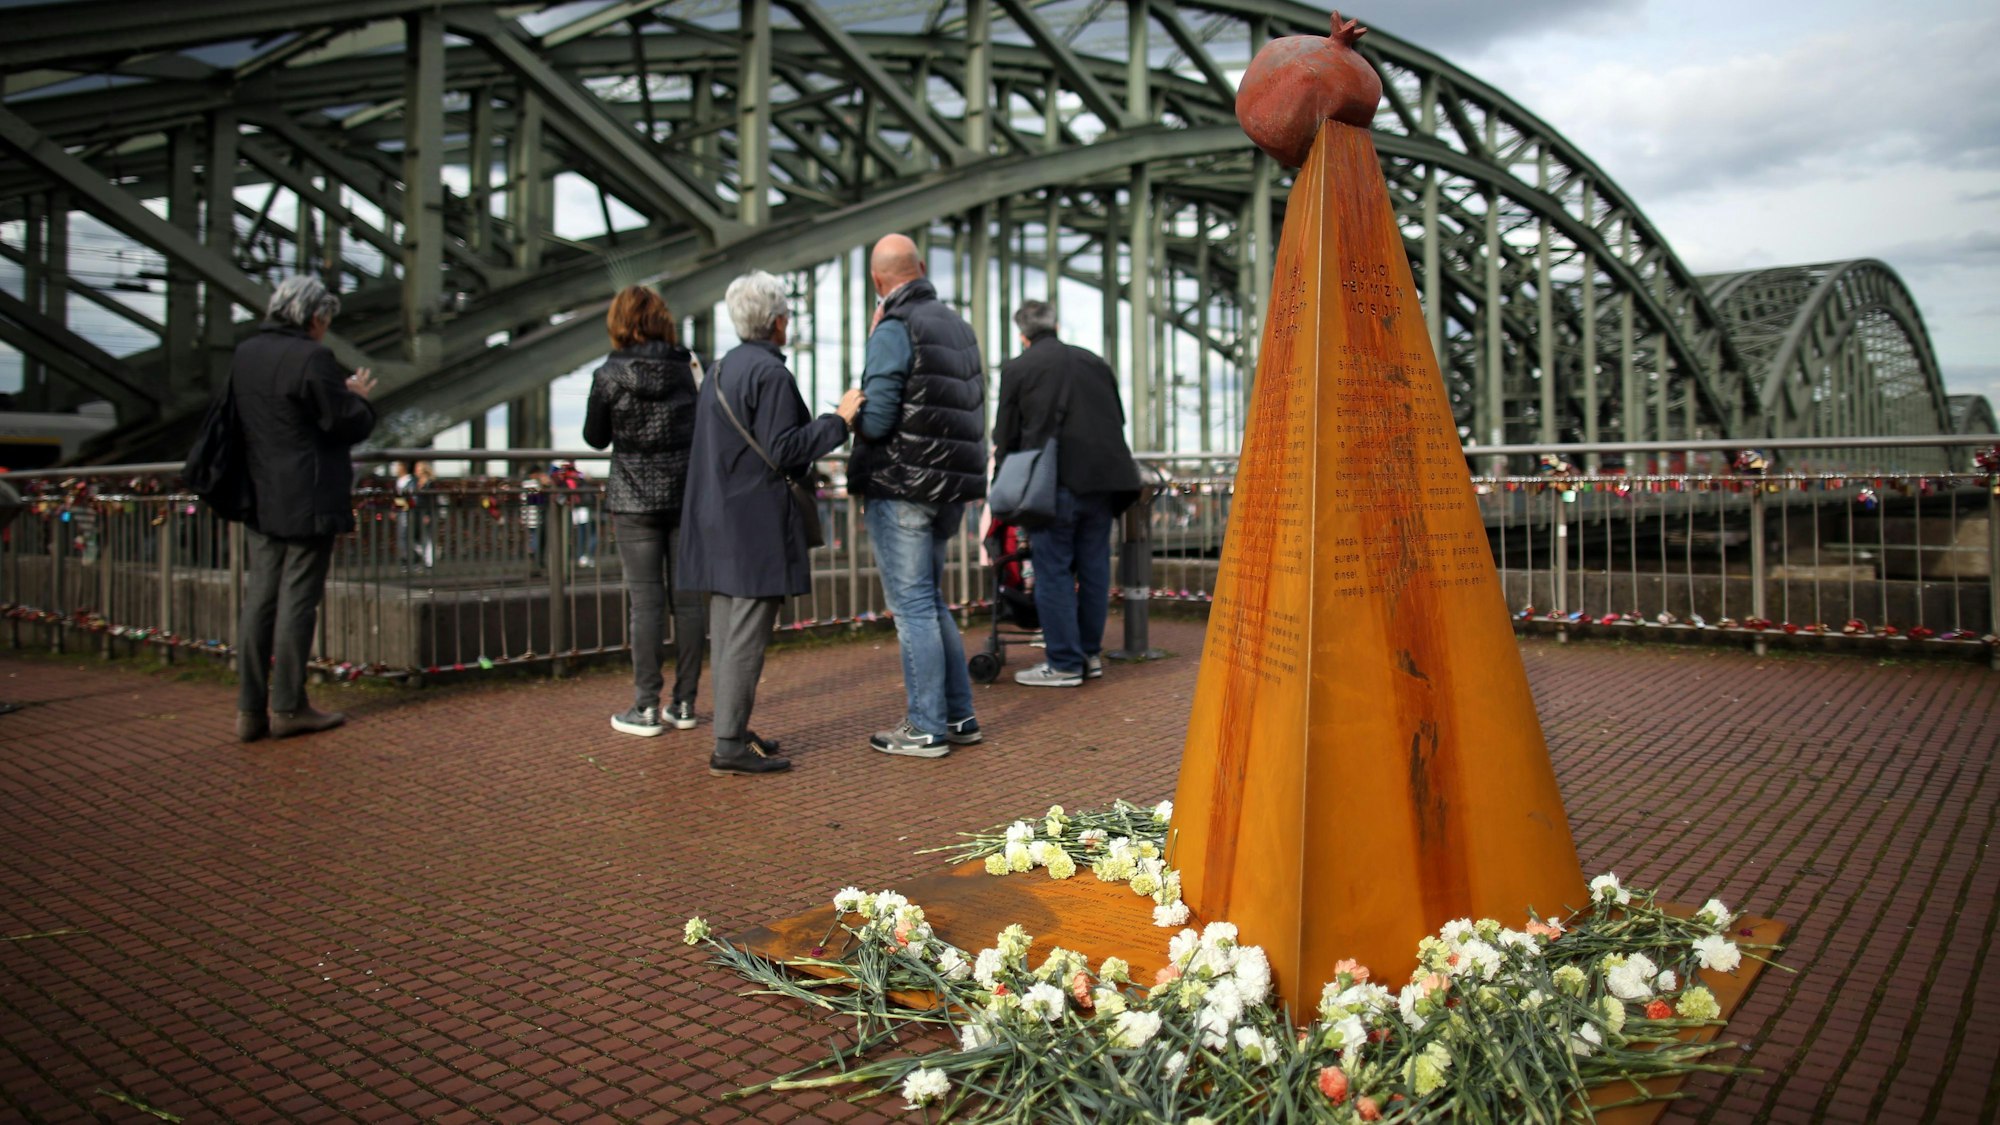 Das Mahnmal, finanziert vom Verein „Völkermord erinnern“, stand bereits am Heinrich-Böll-Platz nahe der Hohenzollernbrücke. Eine etwa drei Meter hohe Pyramide mit Inschriften ist umgeben von Blumen.